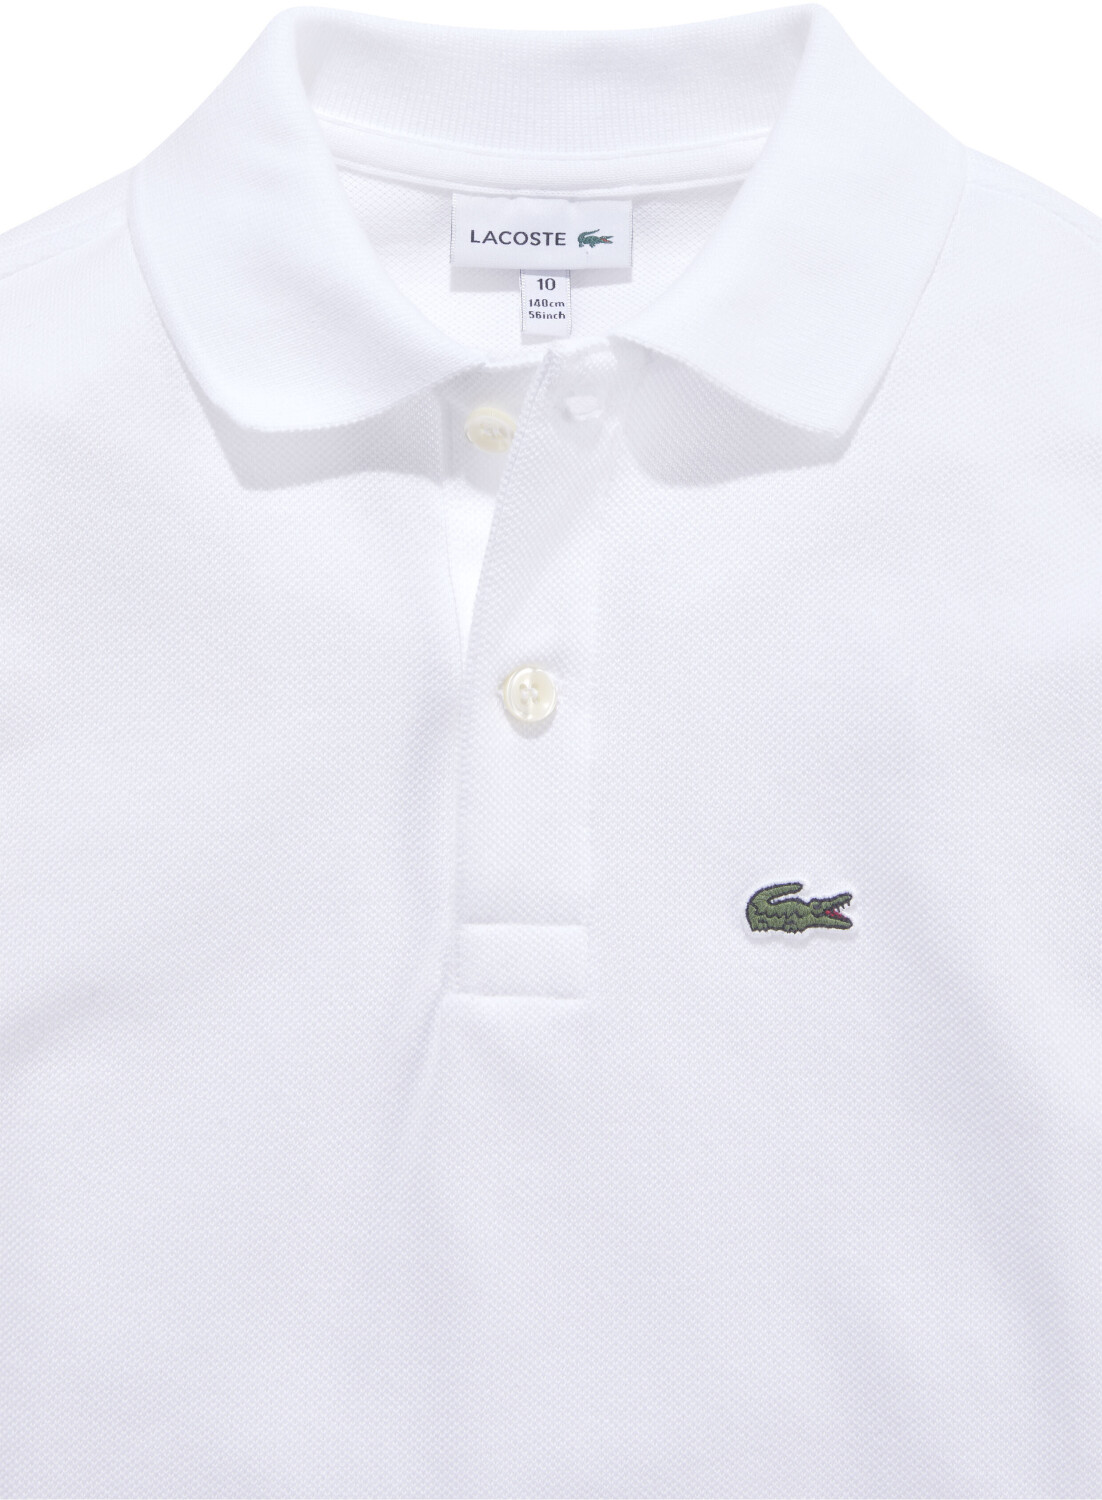 (PJ8915-001) ab 38,50 white Poloshirt bei € | Preisvergleich Lacoste